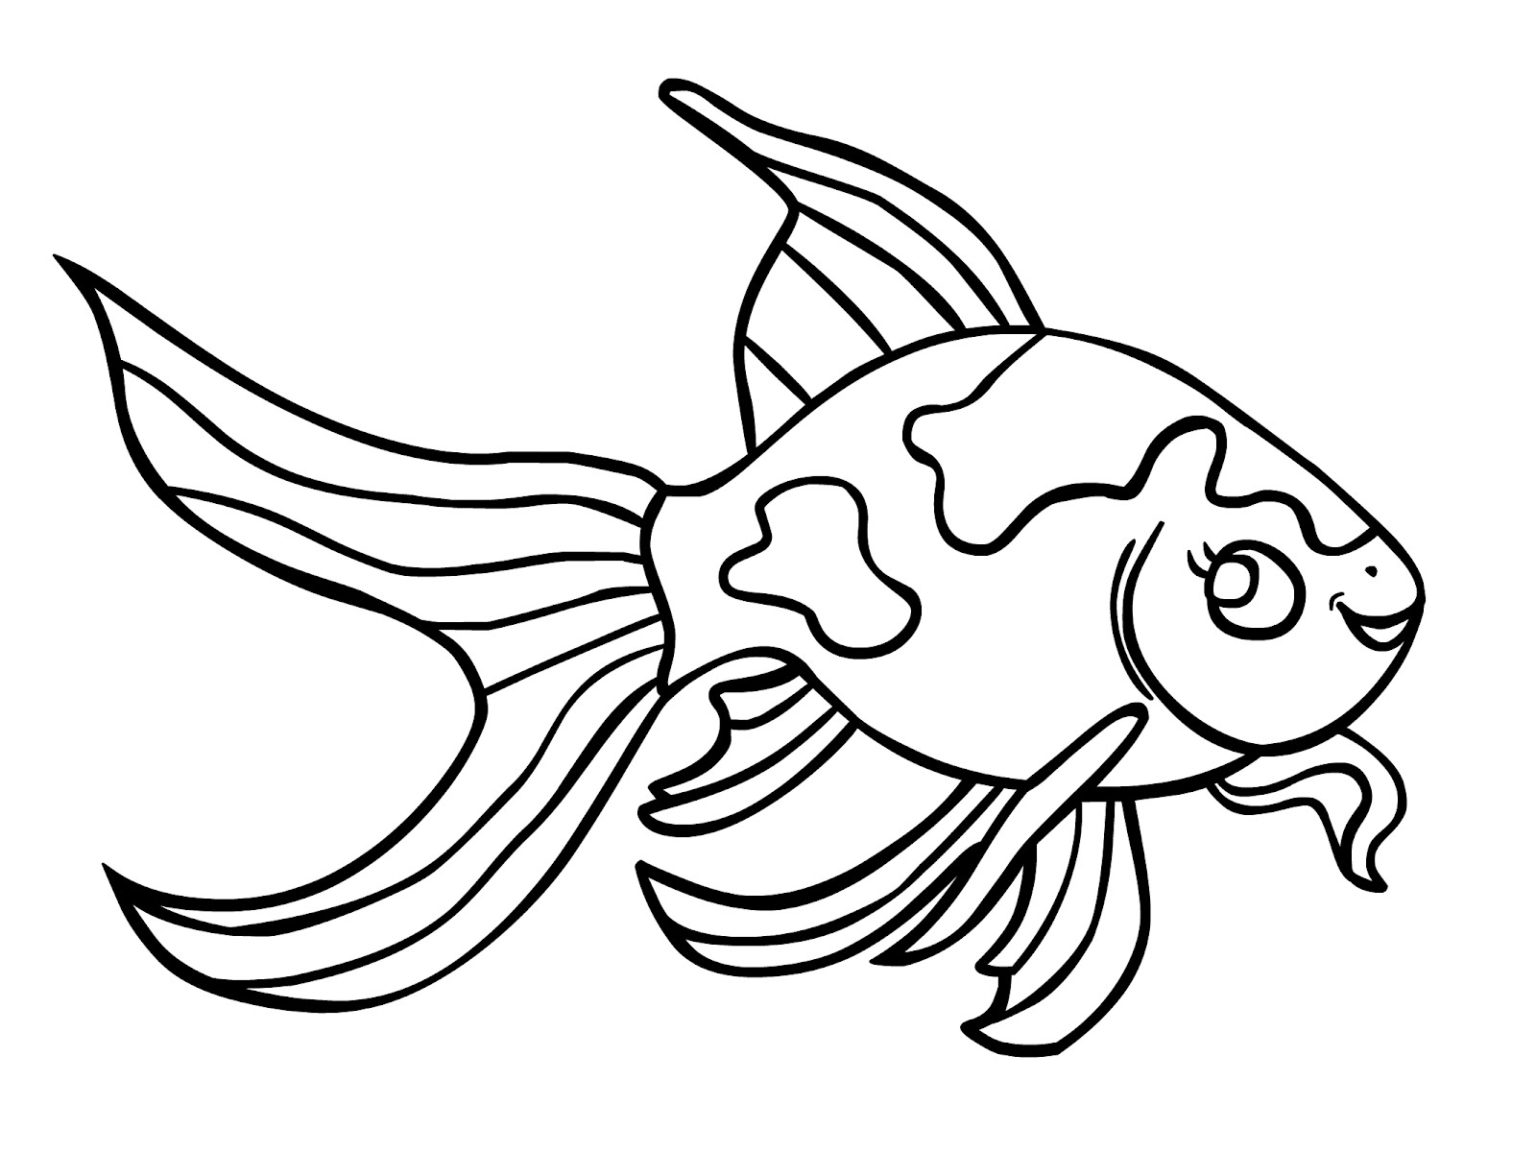 Một kỹ năng vẽ thật đáng khoe, vẽ cá vàng sẽ mang đến cho bạn một tác phẩm đầy sáng tạo. Hãy cùng xem hình ảnh về việc vẽ cá vàng để tìm cảm hứng cho bức vẽ tiếp theo của bạn nhé!